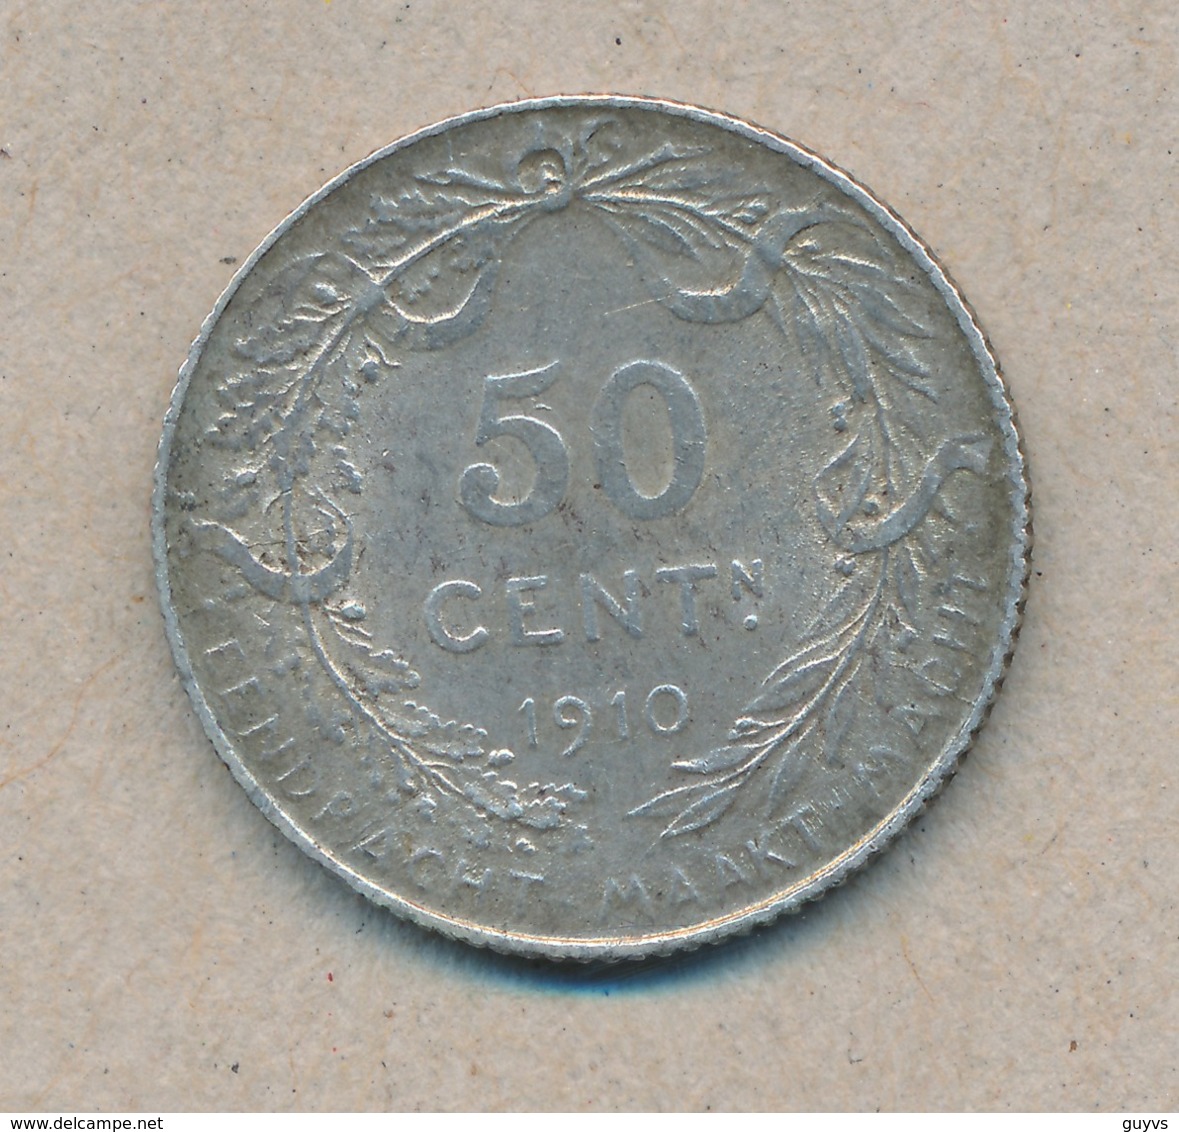 België/Belgique 50 Ct Albert1 1910 Vl Morin 299 (1378164) - 50 Cent